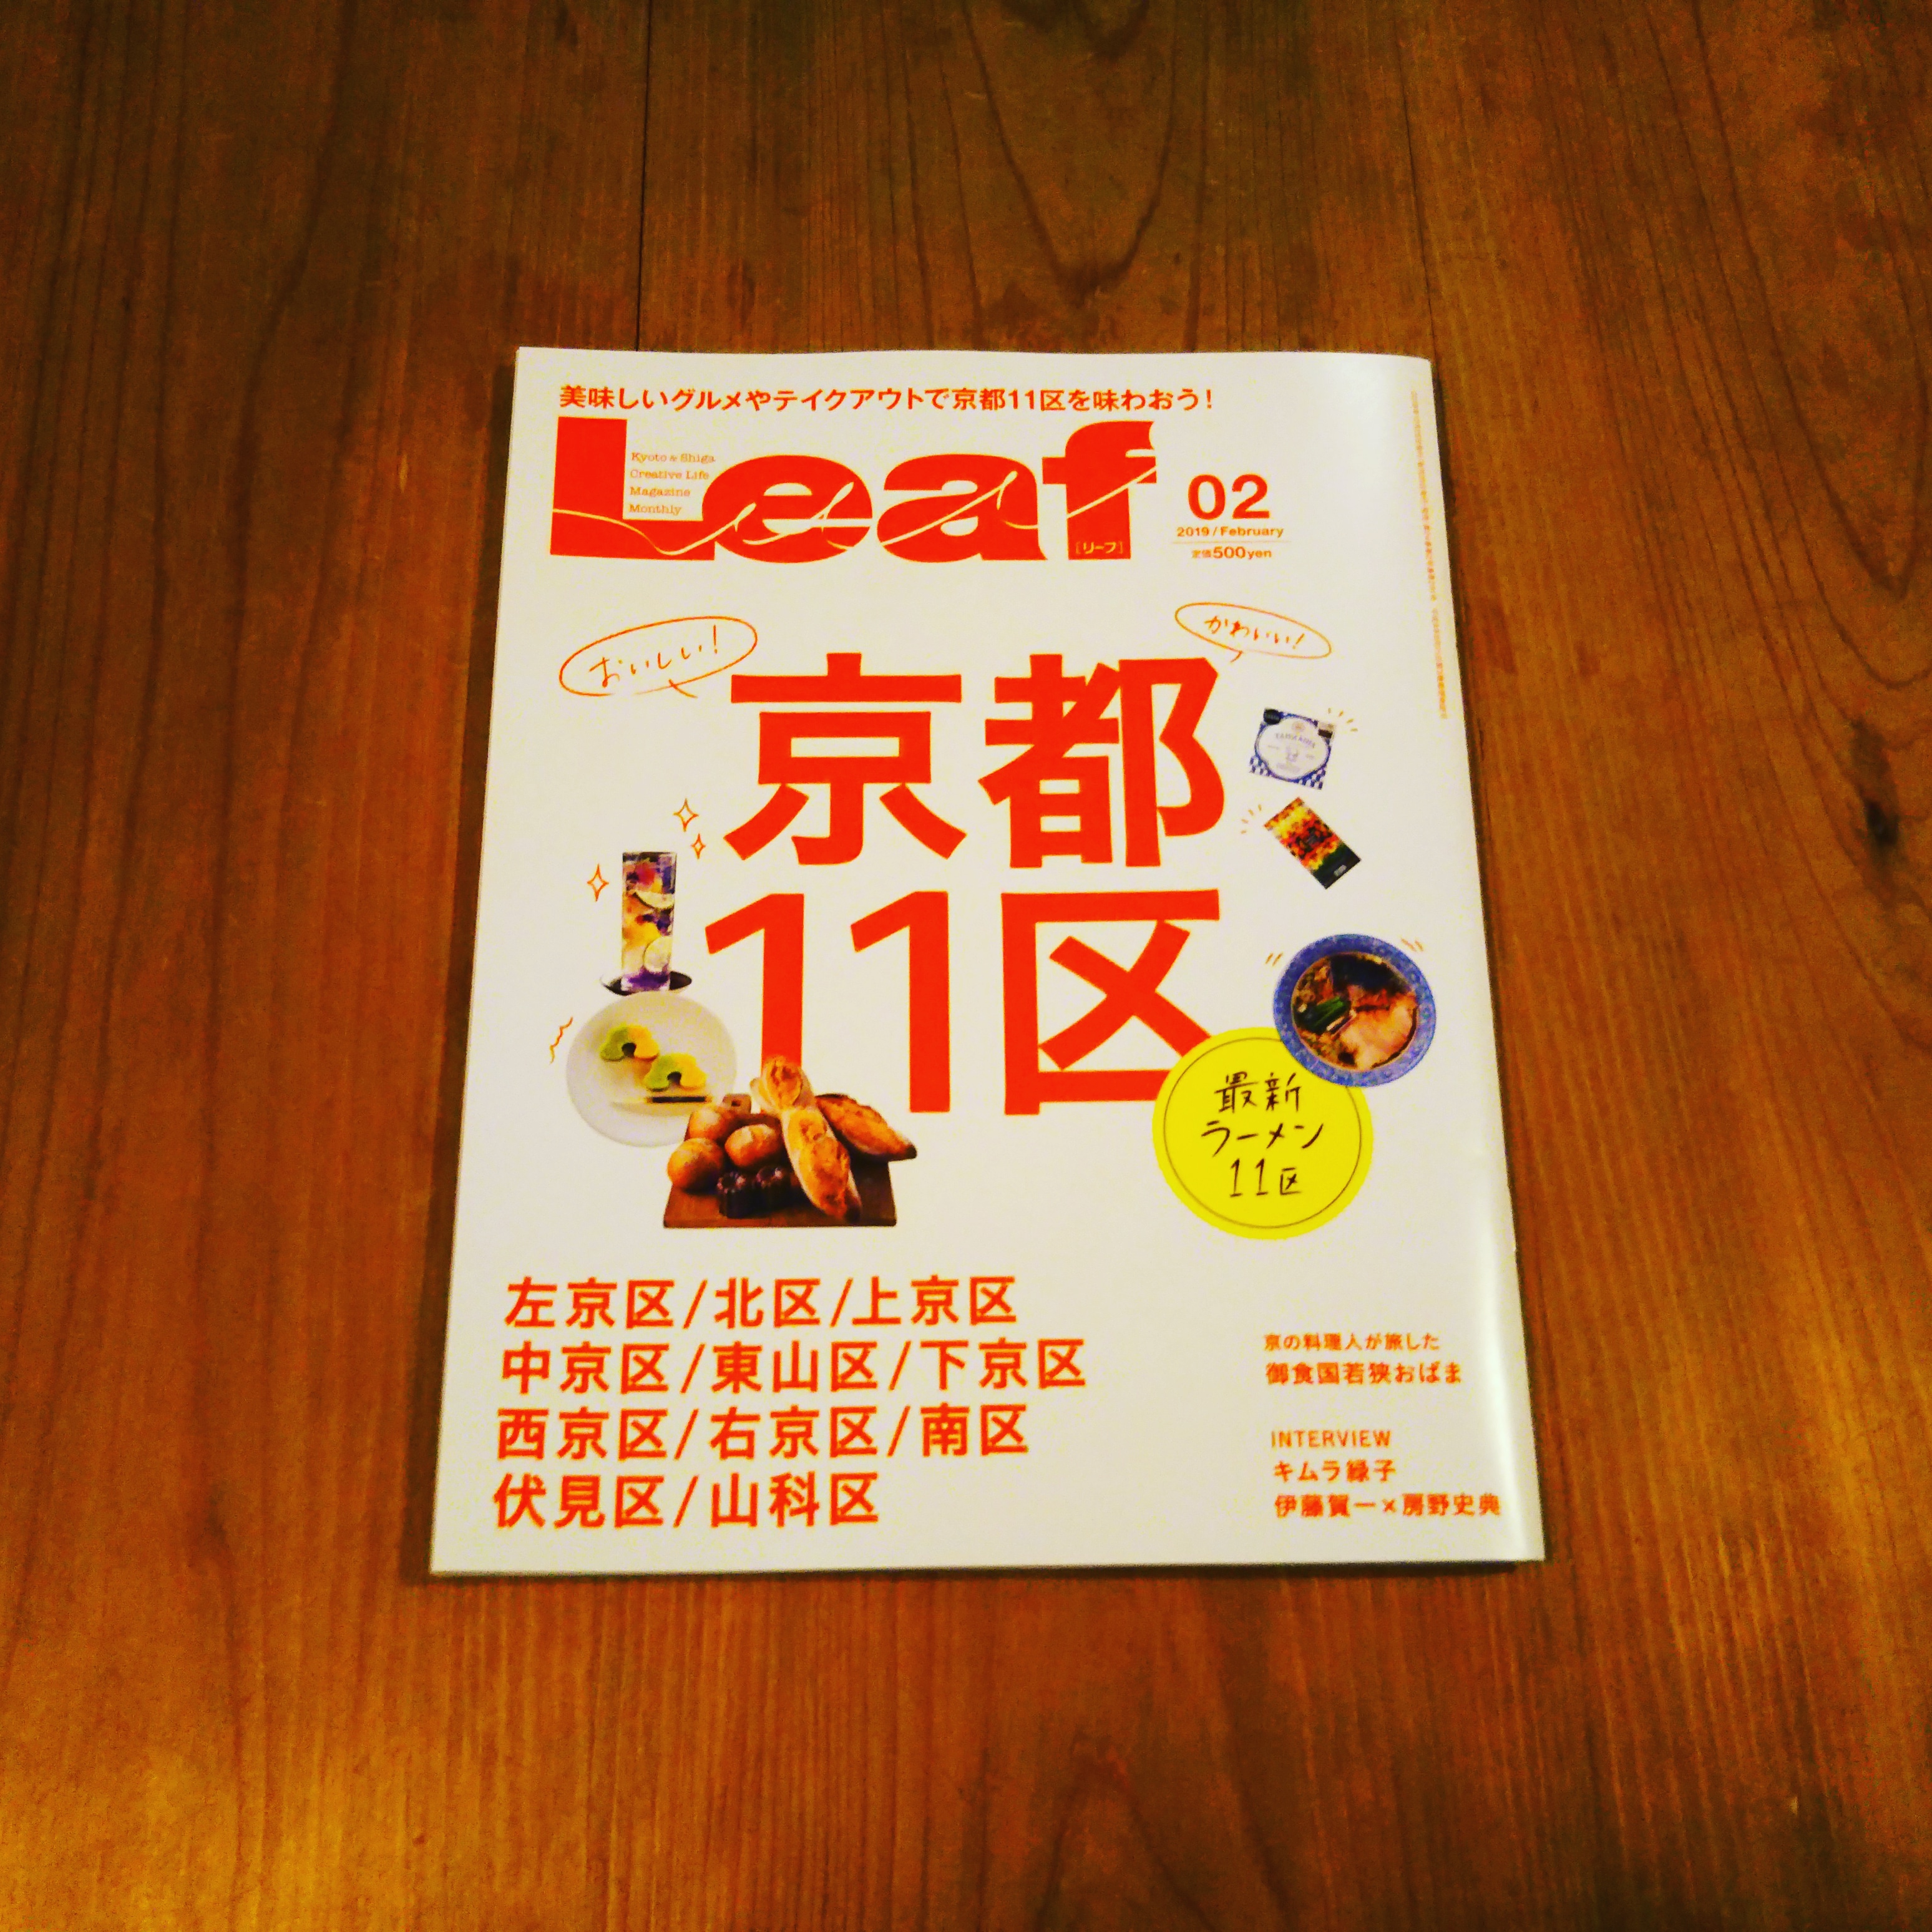 Leaf201902